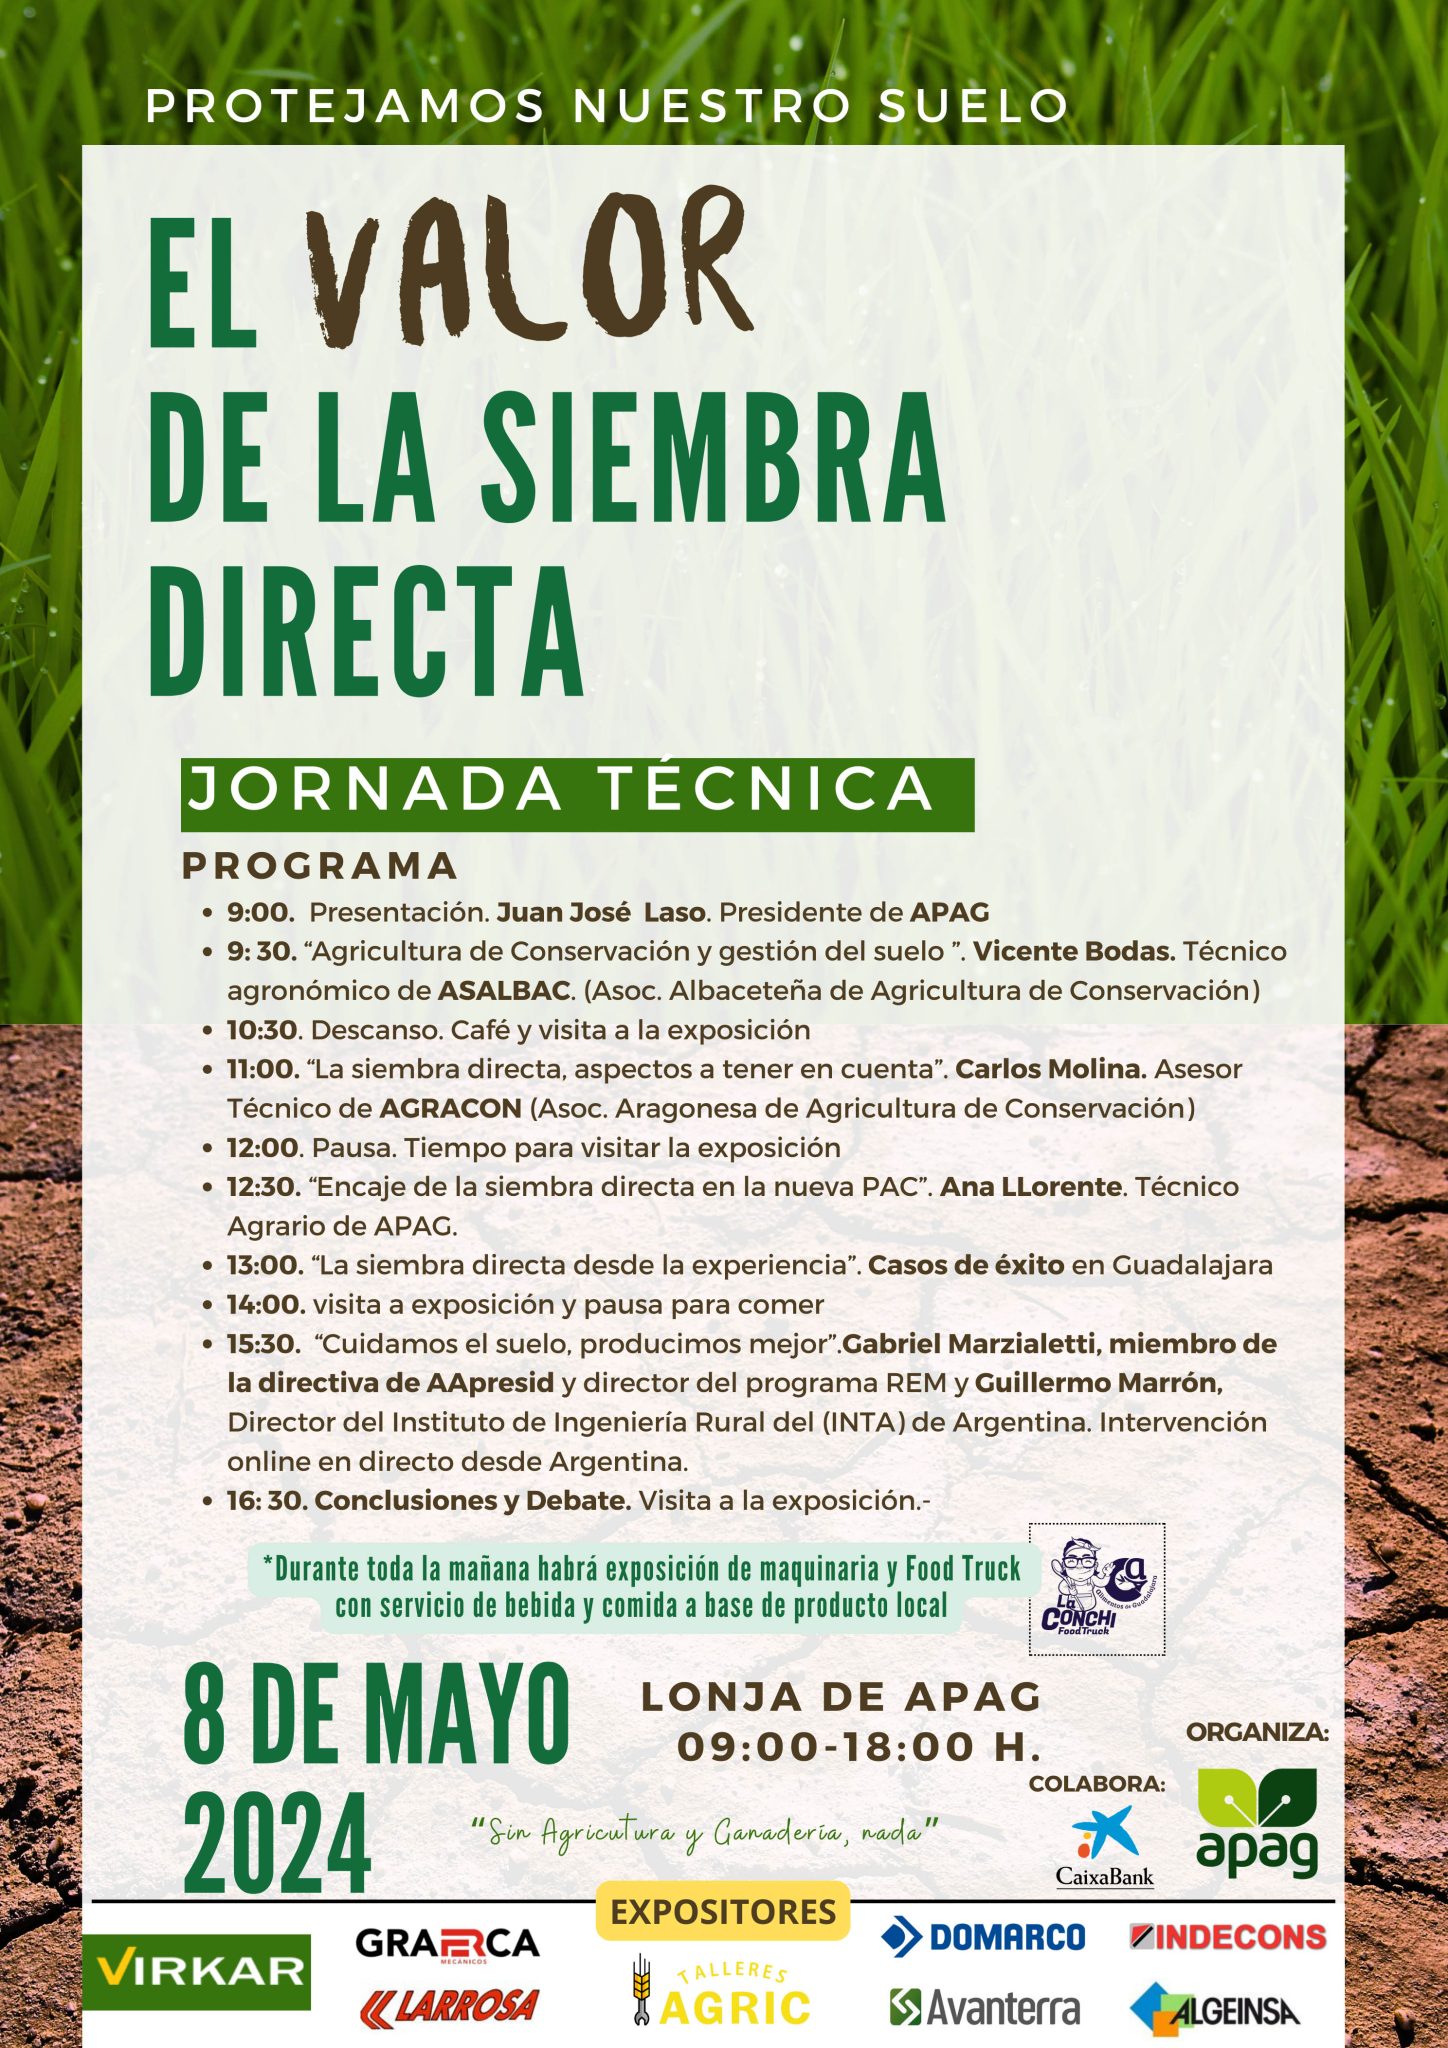 Expertos nacionales e internacionales debatirán sobre Siembra Directa en Guadalajara: APAG organiza jornada técnica de alto nivel